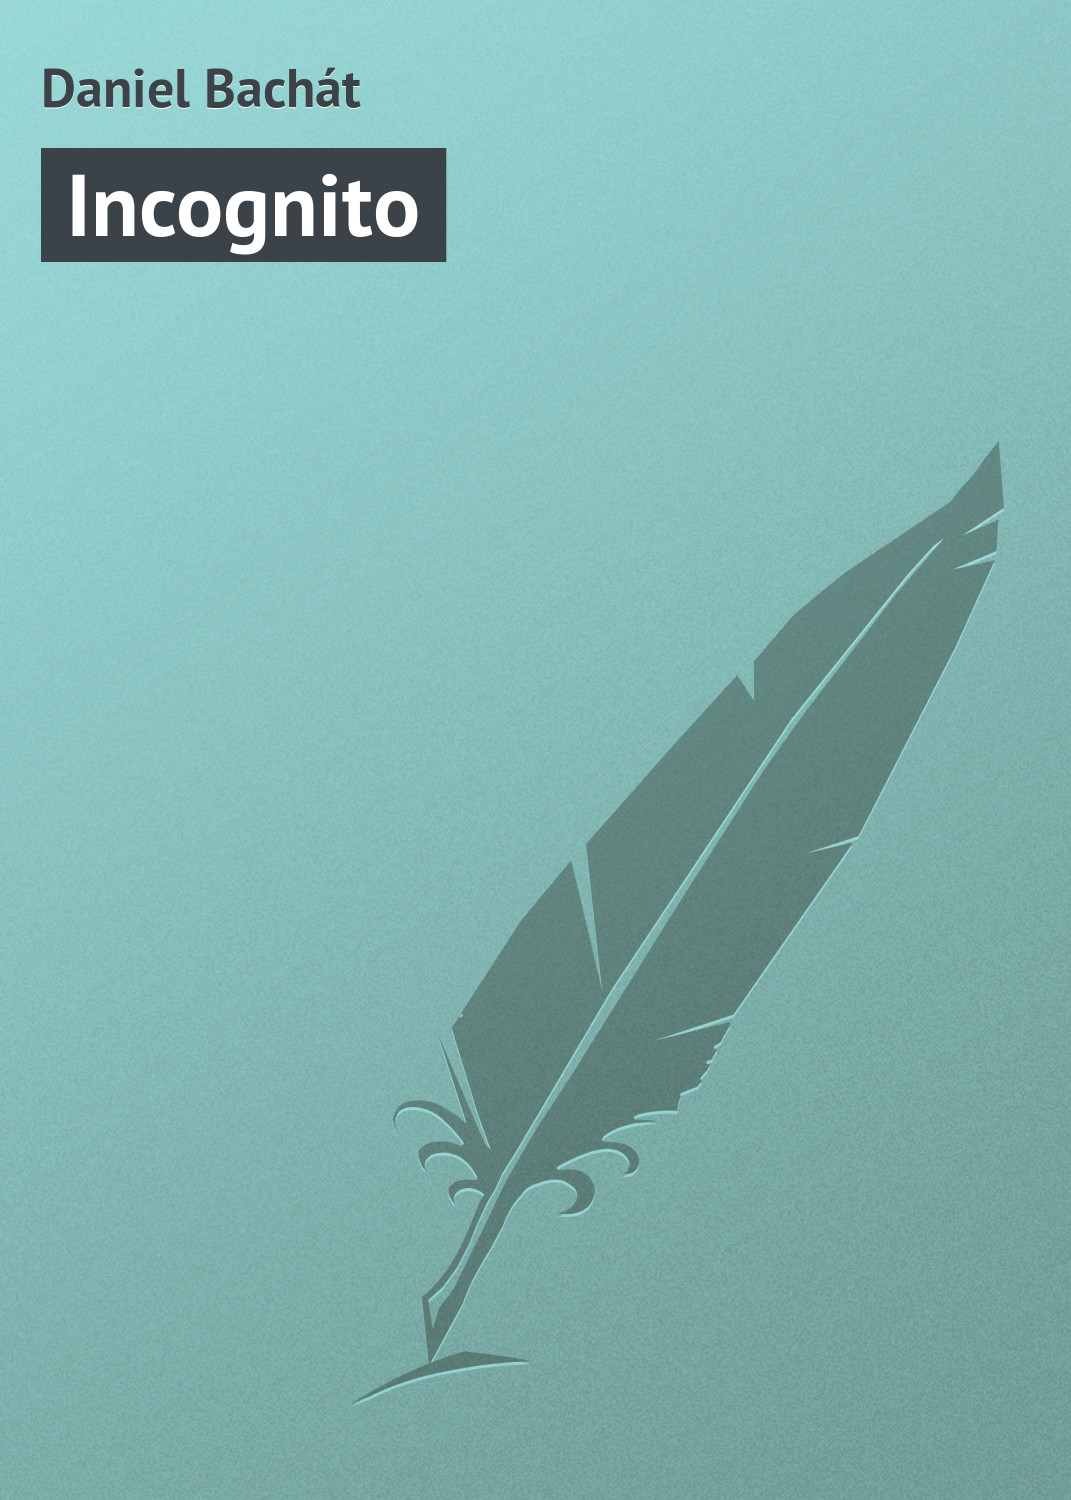 Книга Incognito из серии , созданная Daniel Bachát, может относится к жанру Зарубежная старинная литература, Зарубежная классика. Стоимость электронной книги Incognito с идентификатором 21105478 составляет 5.99 руб.